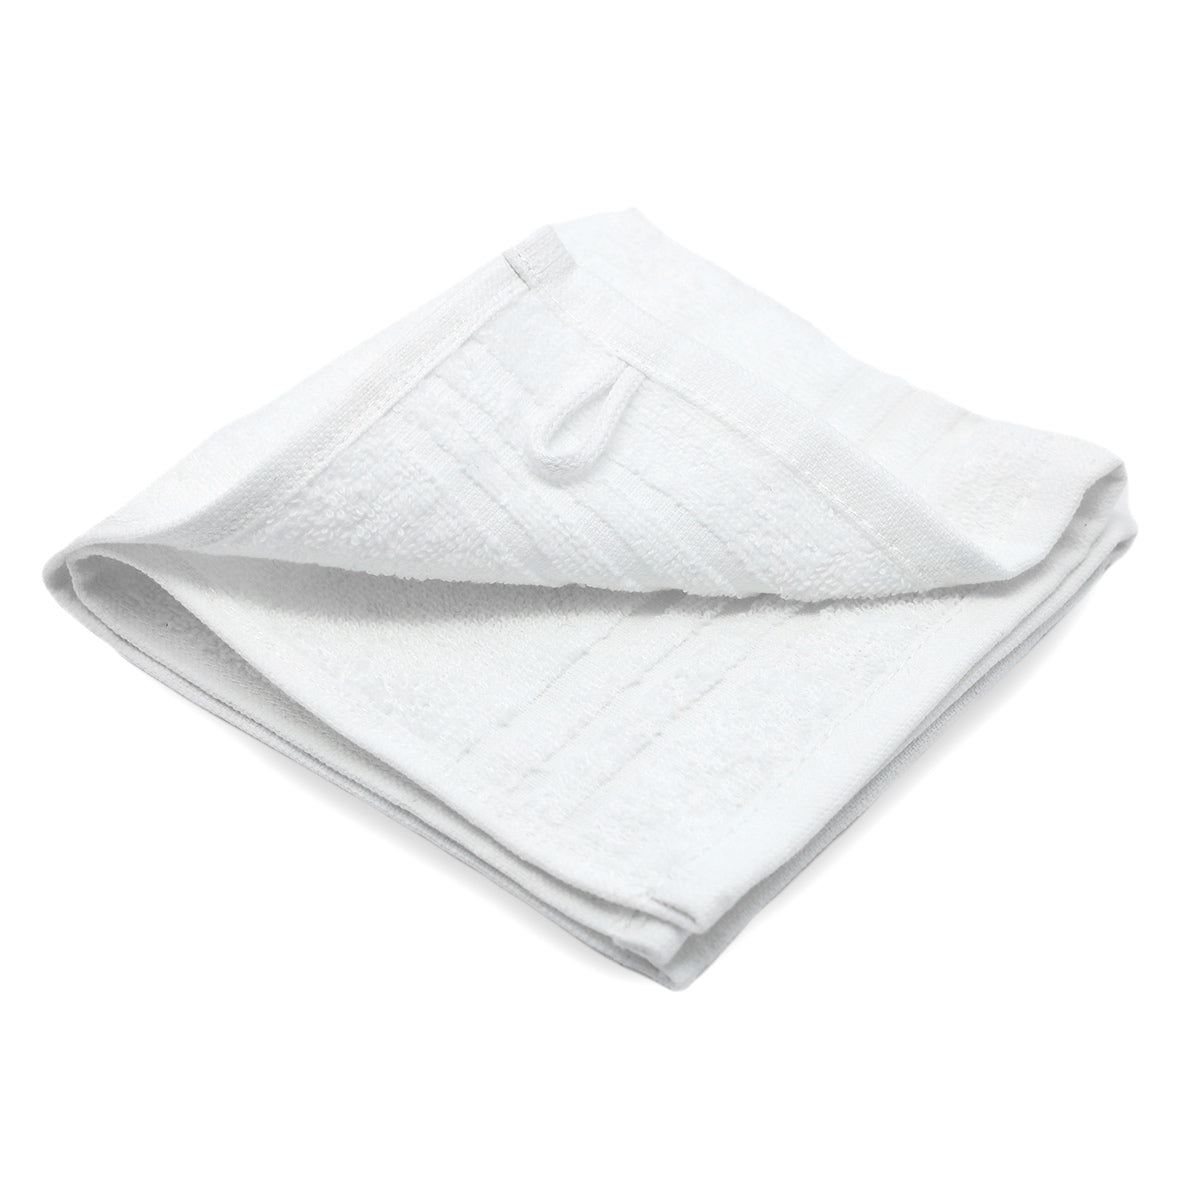 (400 броя) Гренландска сапунена кърпа - 30 x 30 см - Бяла